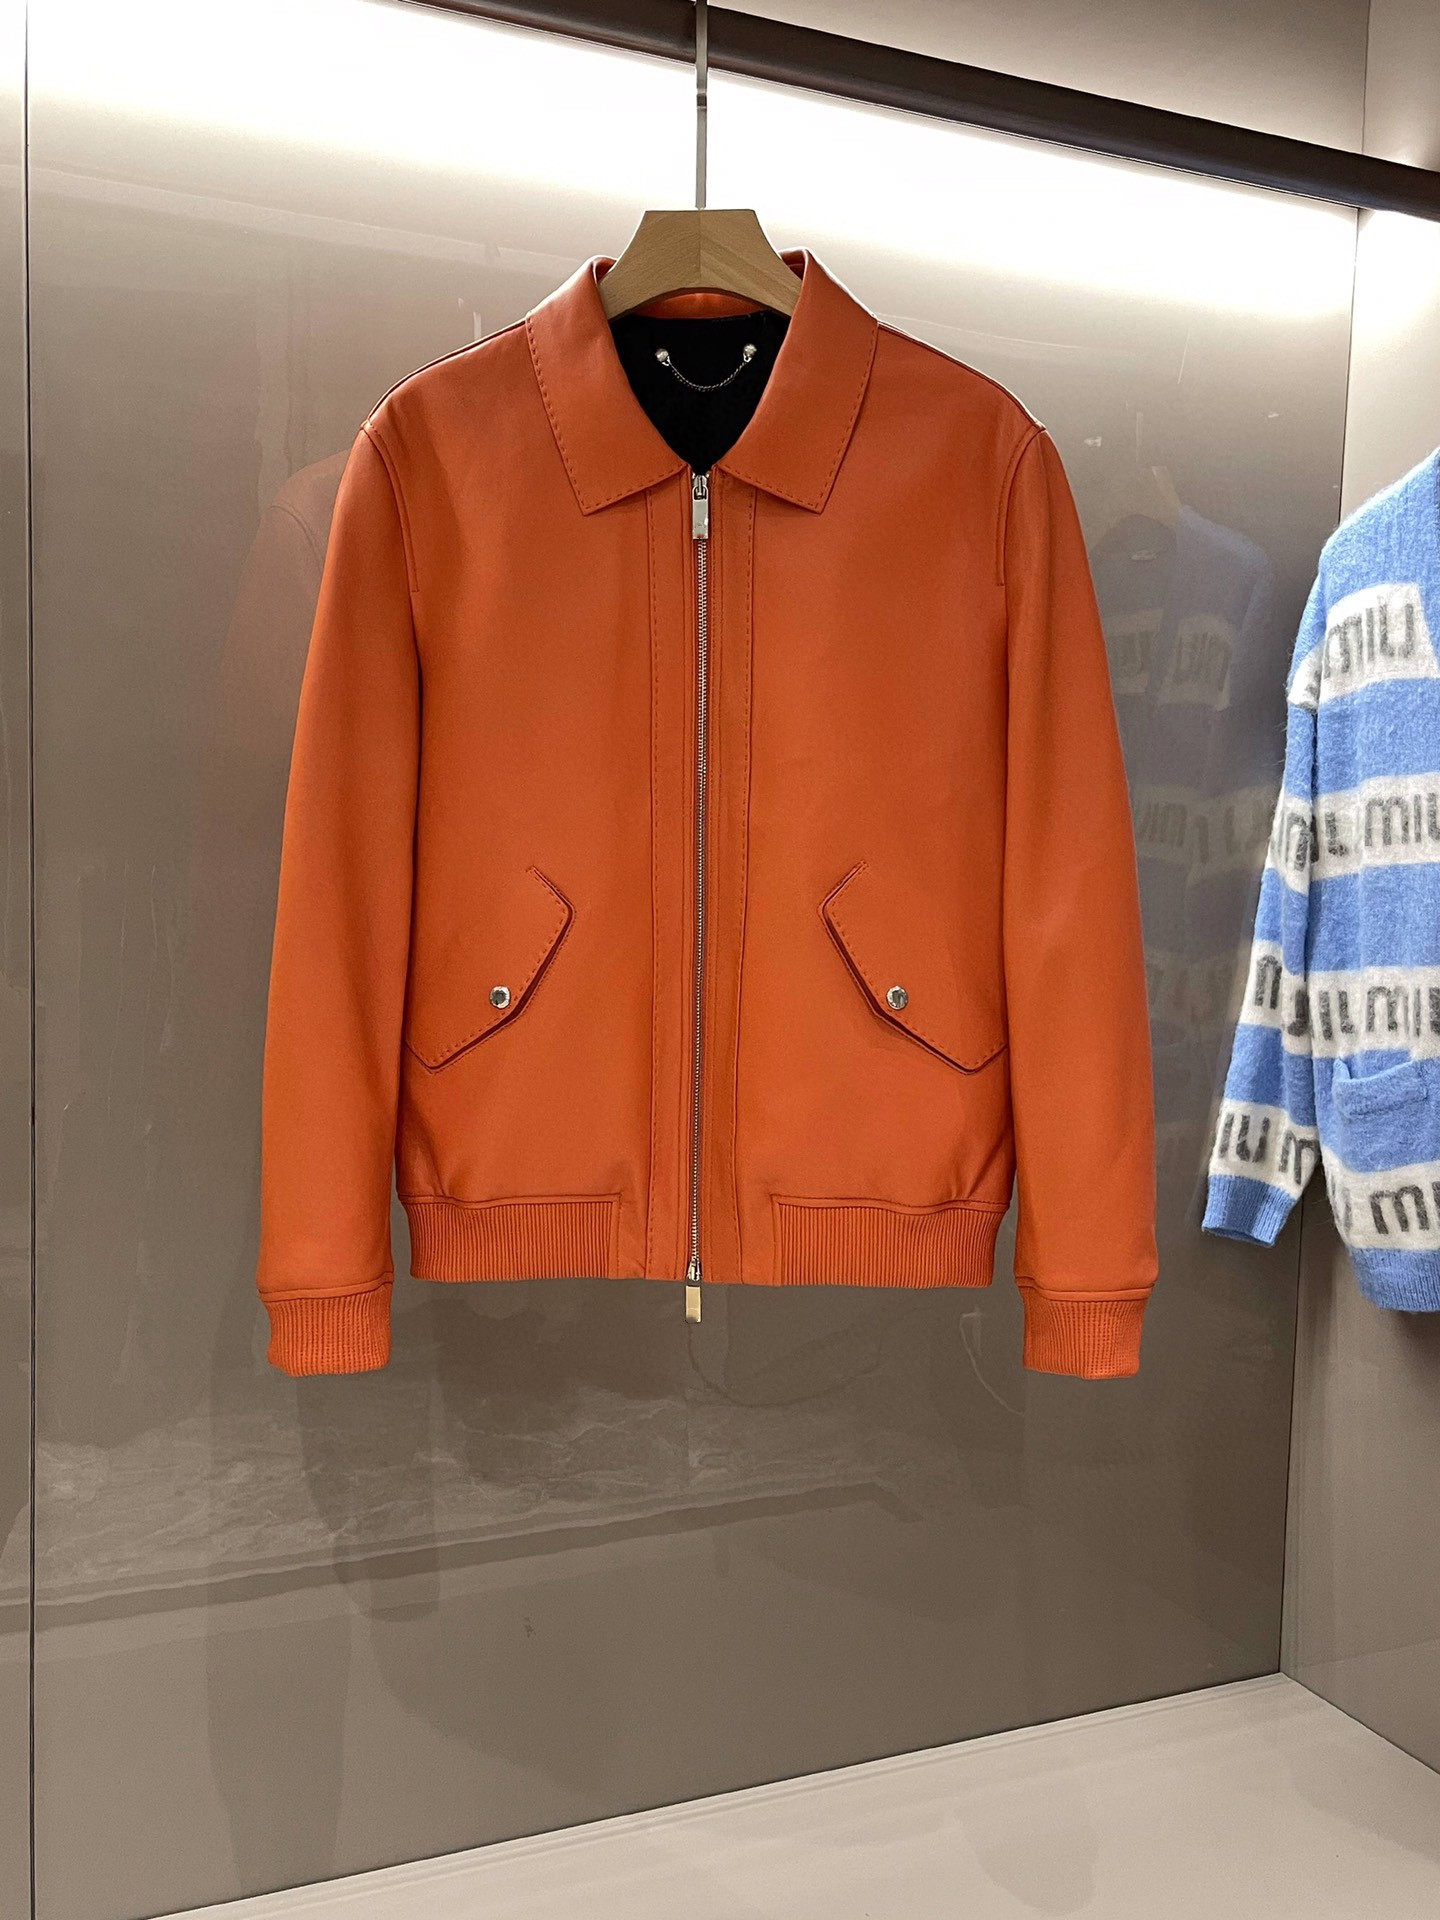 Men's orange lapel business fashion leather jacket/jacket